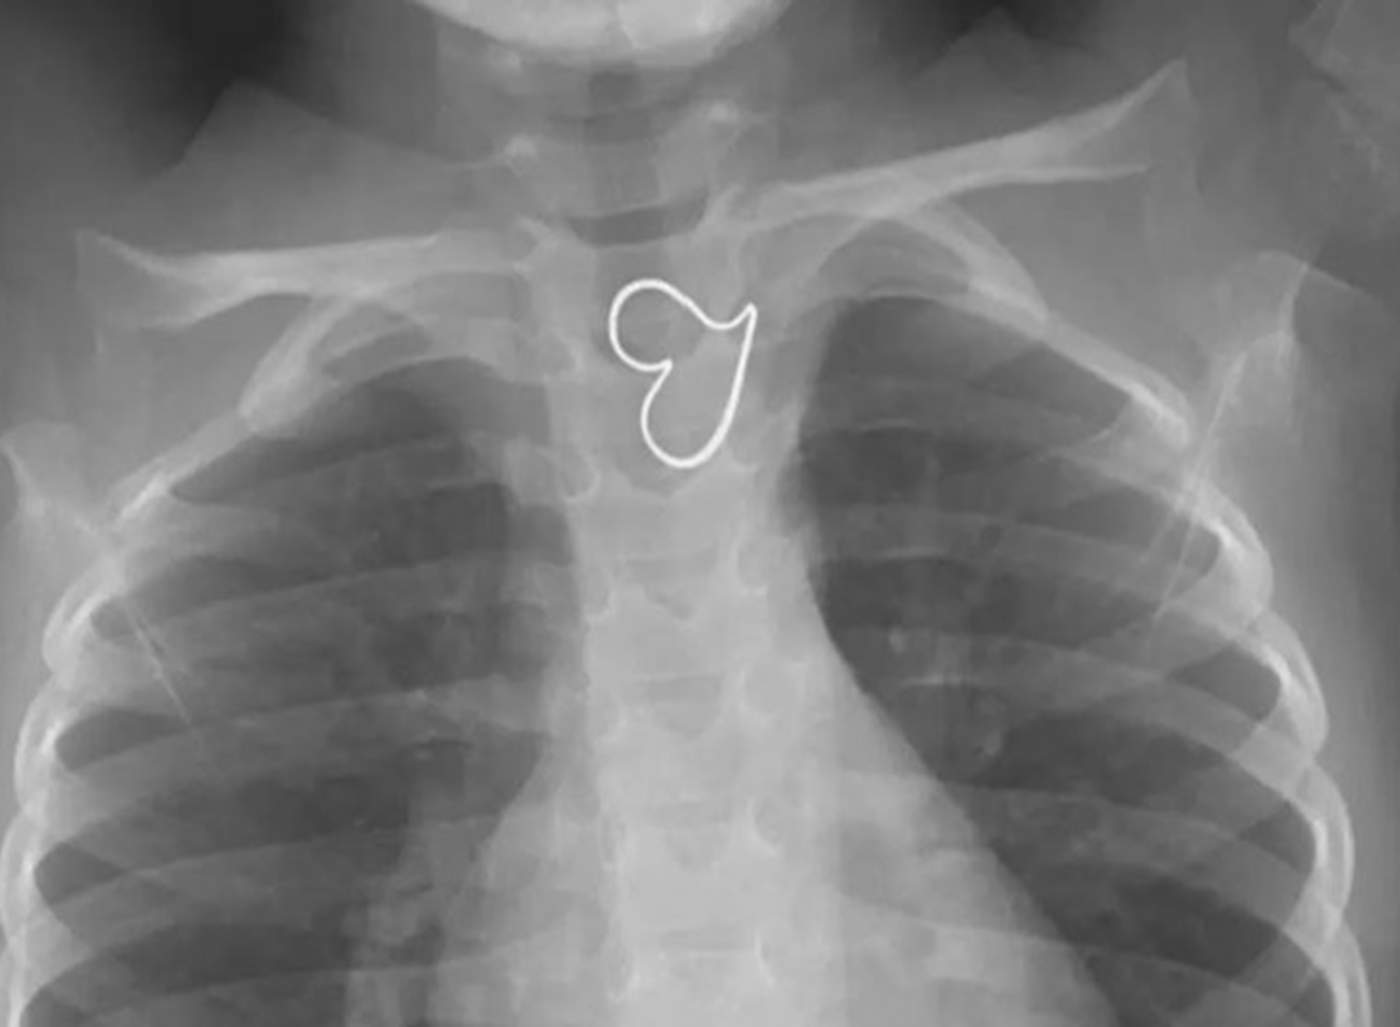 Aparece un ‘corazón perfecto’ en la radiografía de una niña